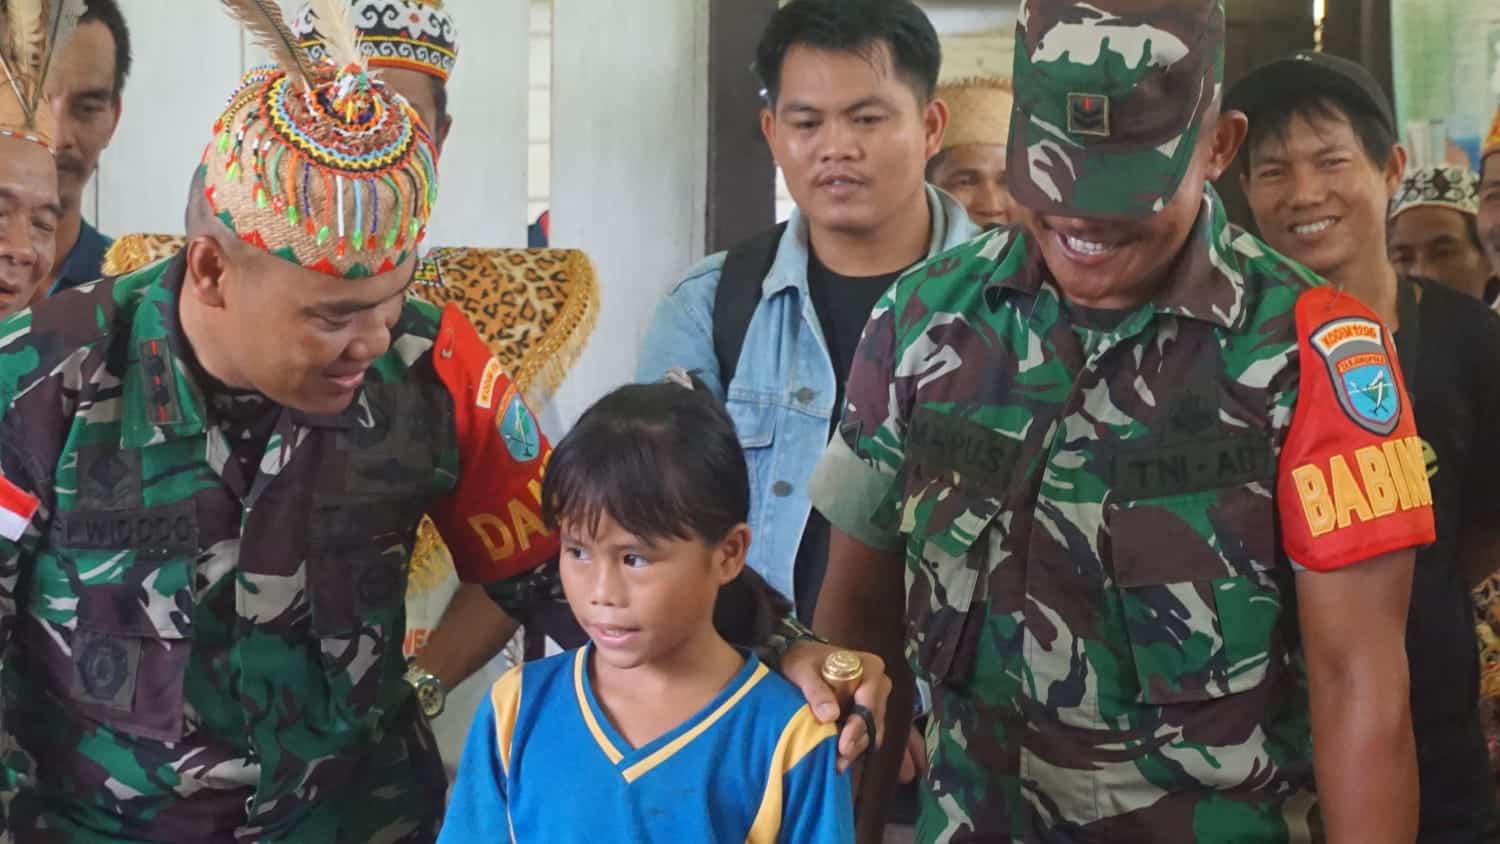 Dandim1206/Putussibau, Letkol Inf Sri Widodo turut memberikan motivasi kepada para murid di sebuah sekolah dasar di wilayah pedalaman di Dusun Nanga Salin, Desa Kareho, Kecamatan Putussibau Selatan. (Foto: Ishaq)